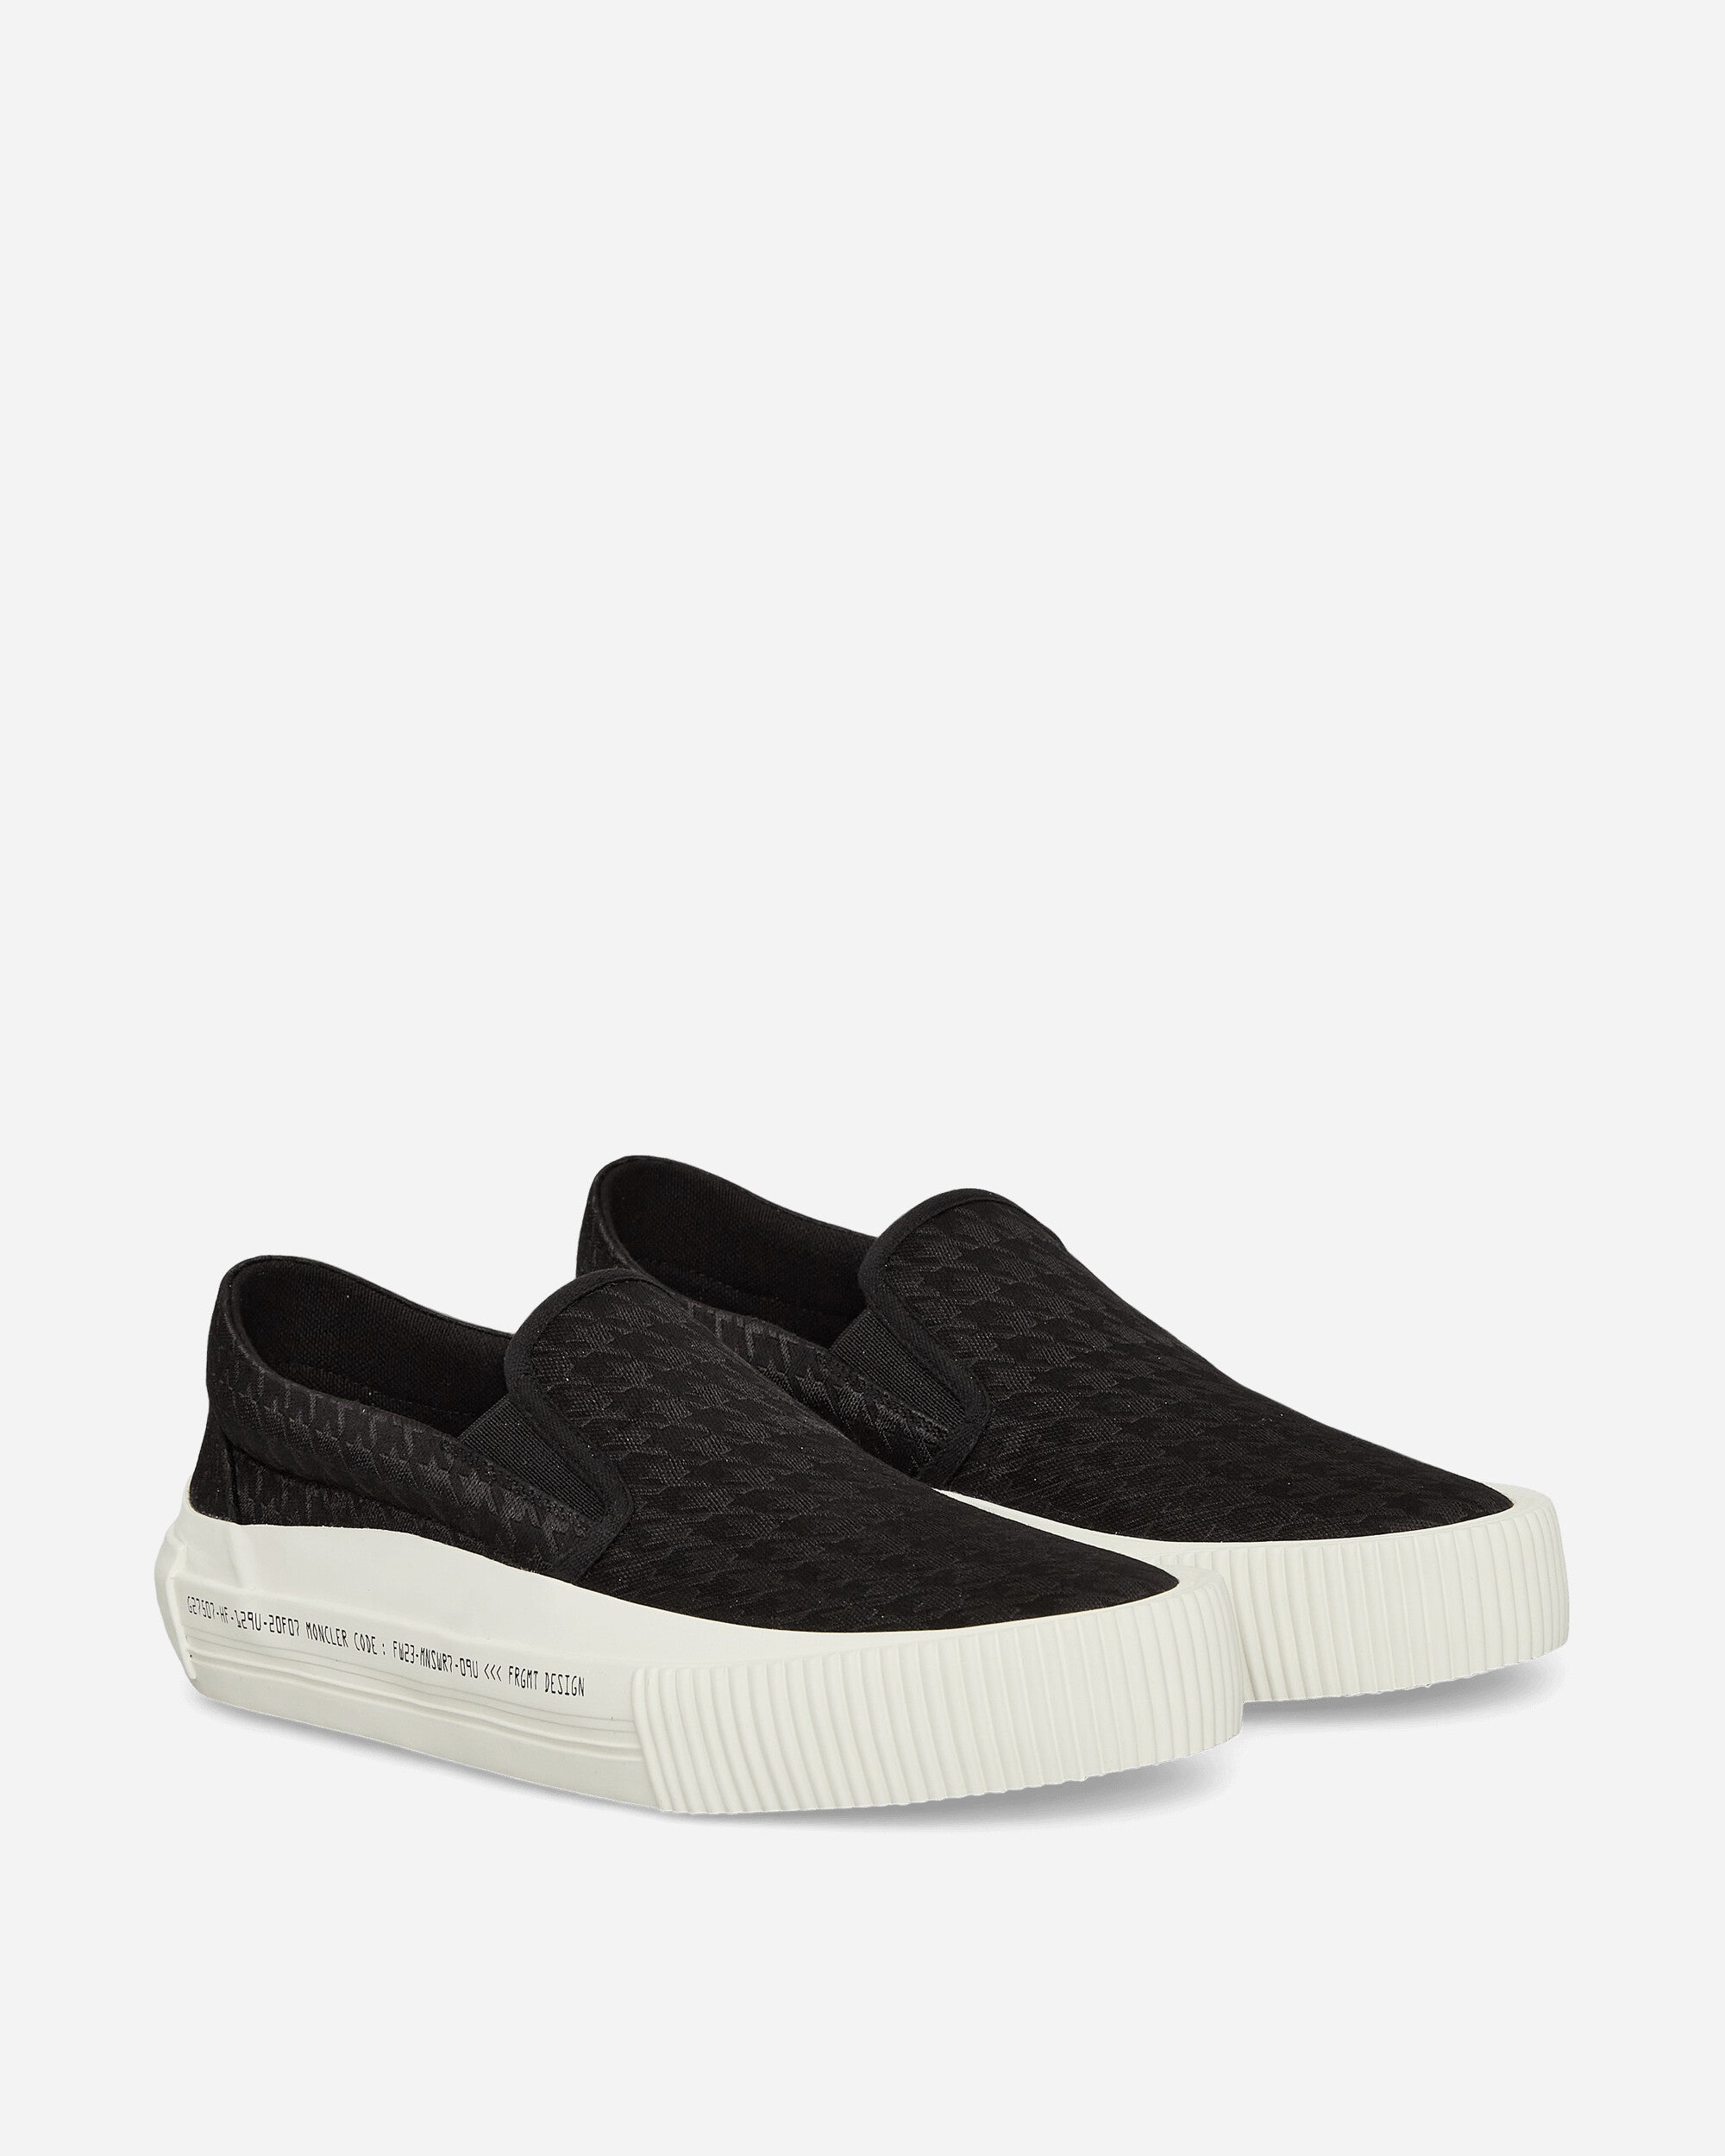 FRGMT Vulcan Slip On Sneakers Black / White